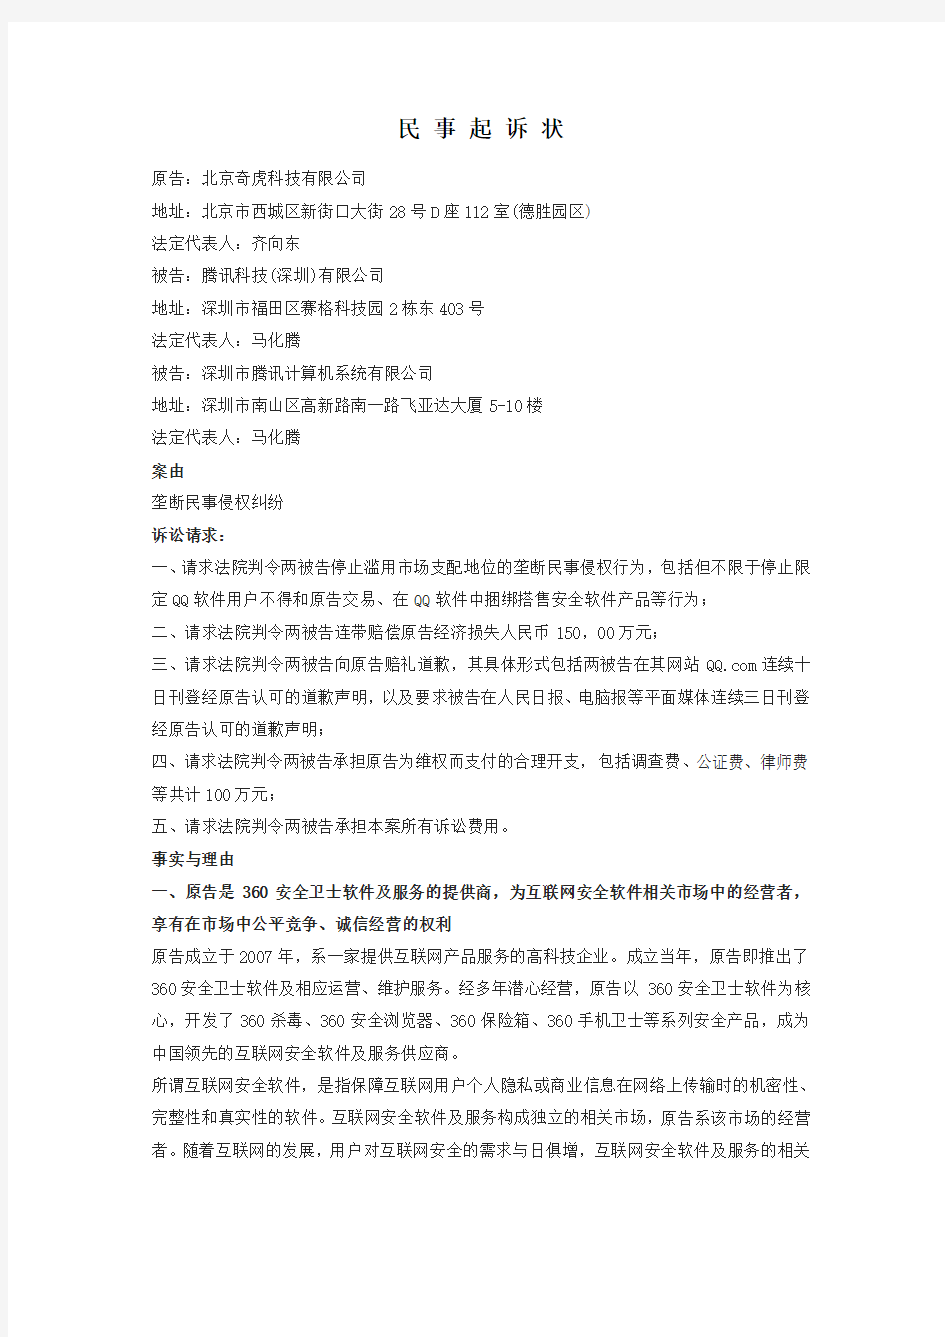 奇虎诉腾讯QQ民事起诉状